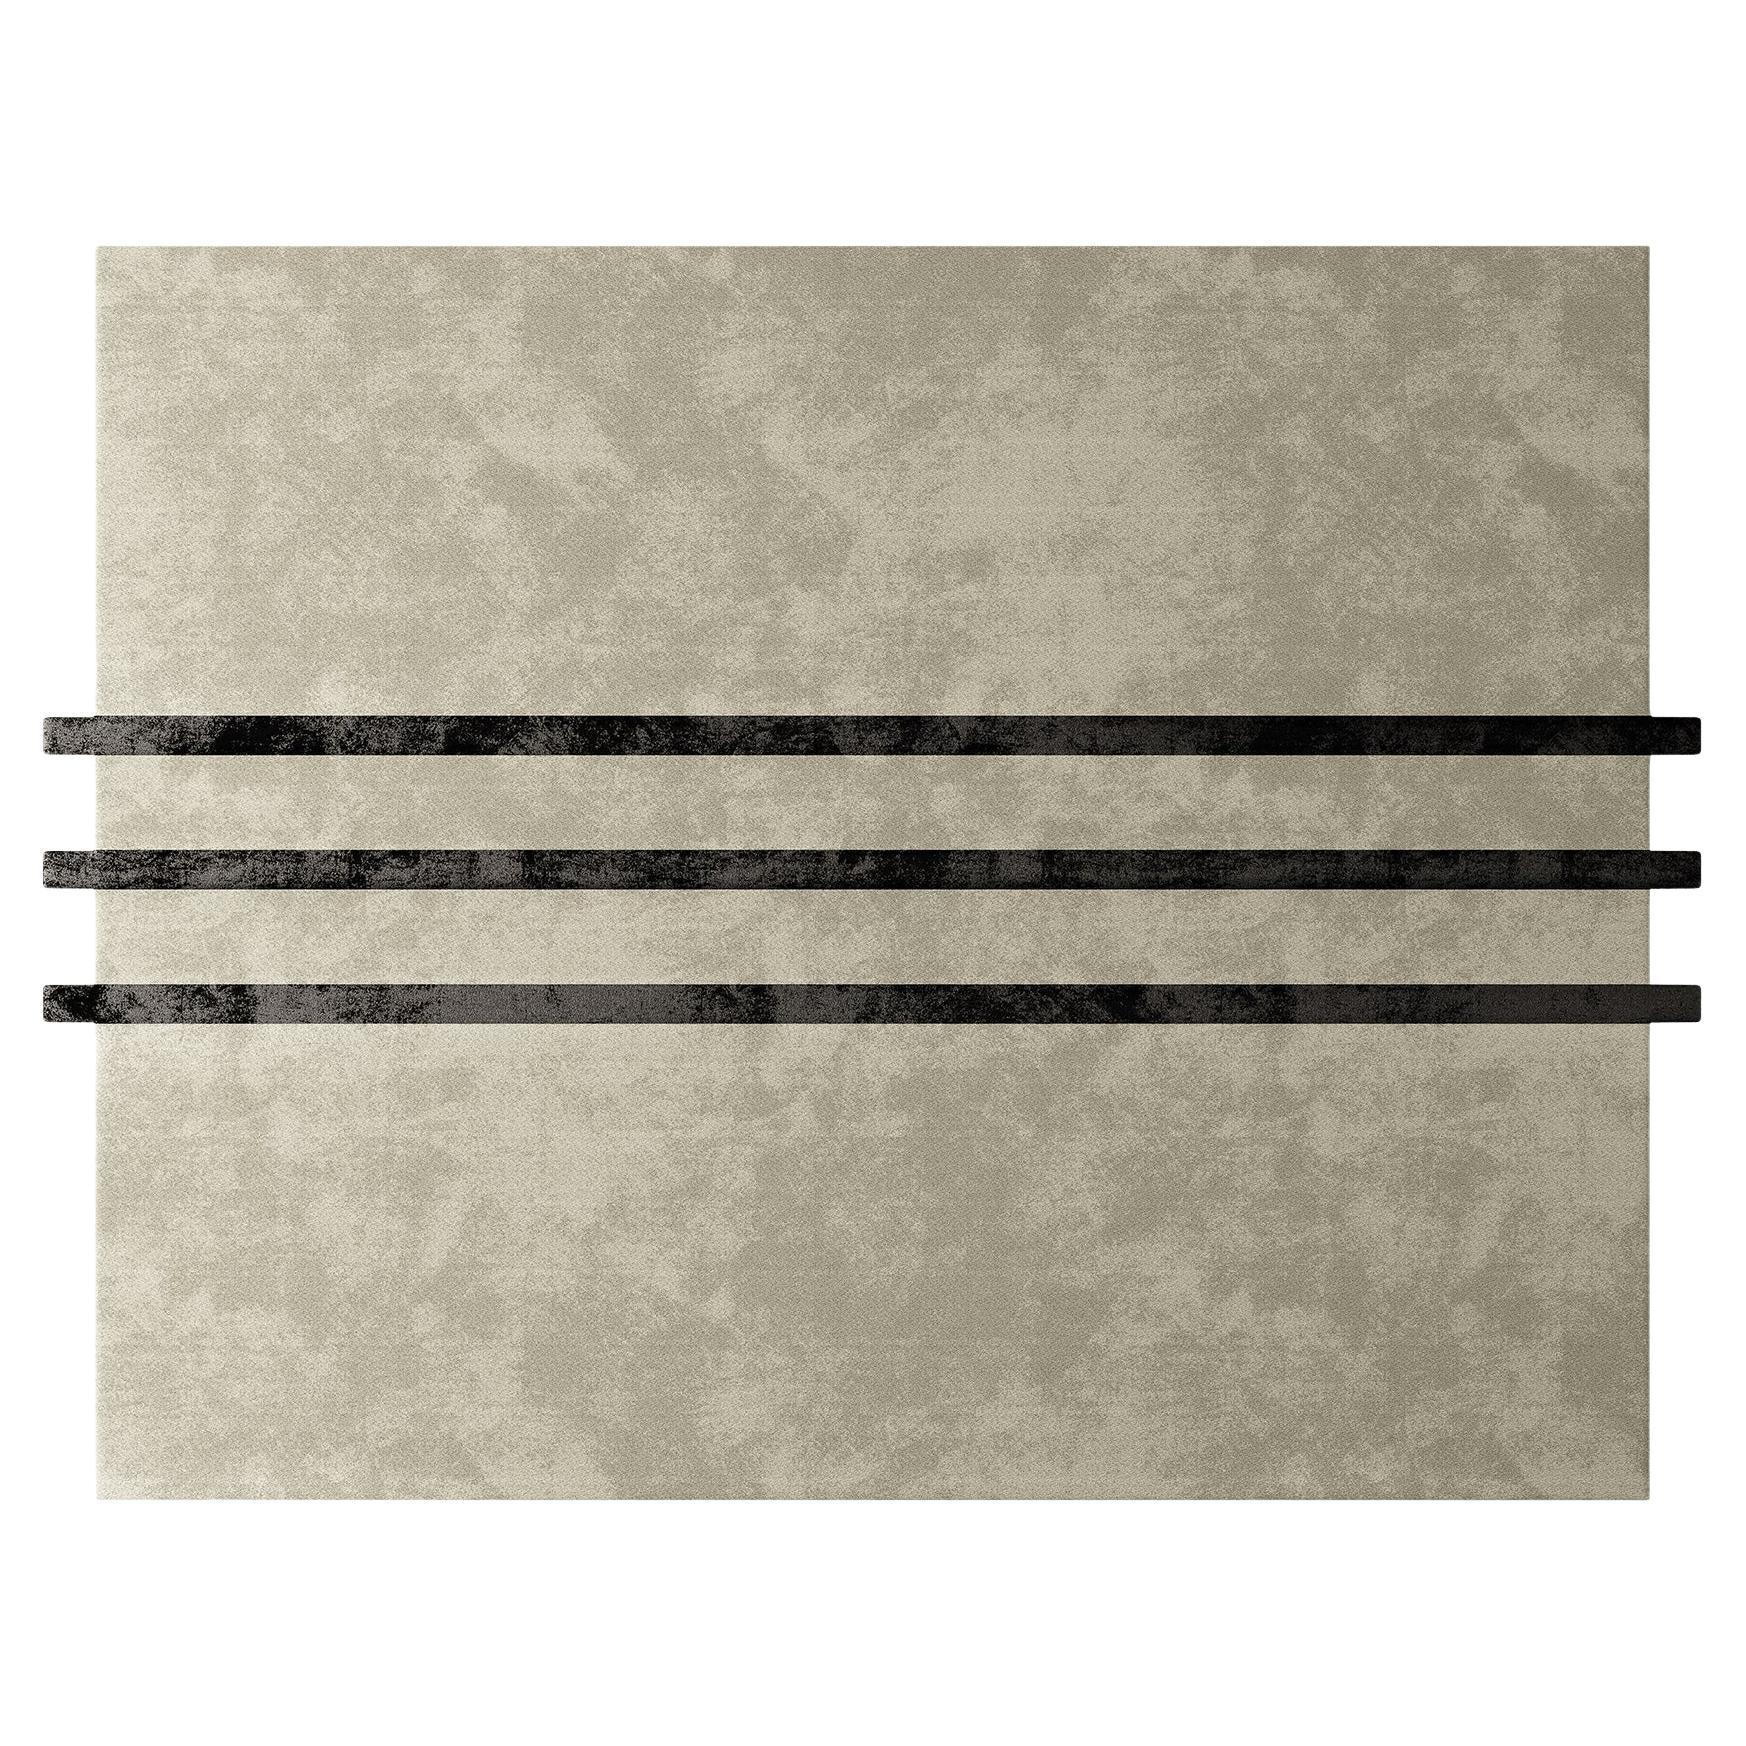 Skandinavischer, maßgefertigter Teppich mit minimalistischem Muster in neutraler Farbe und schwarzen Streifen